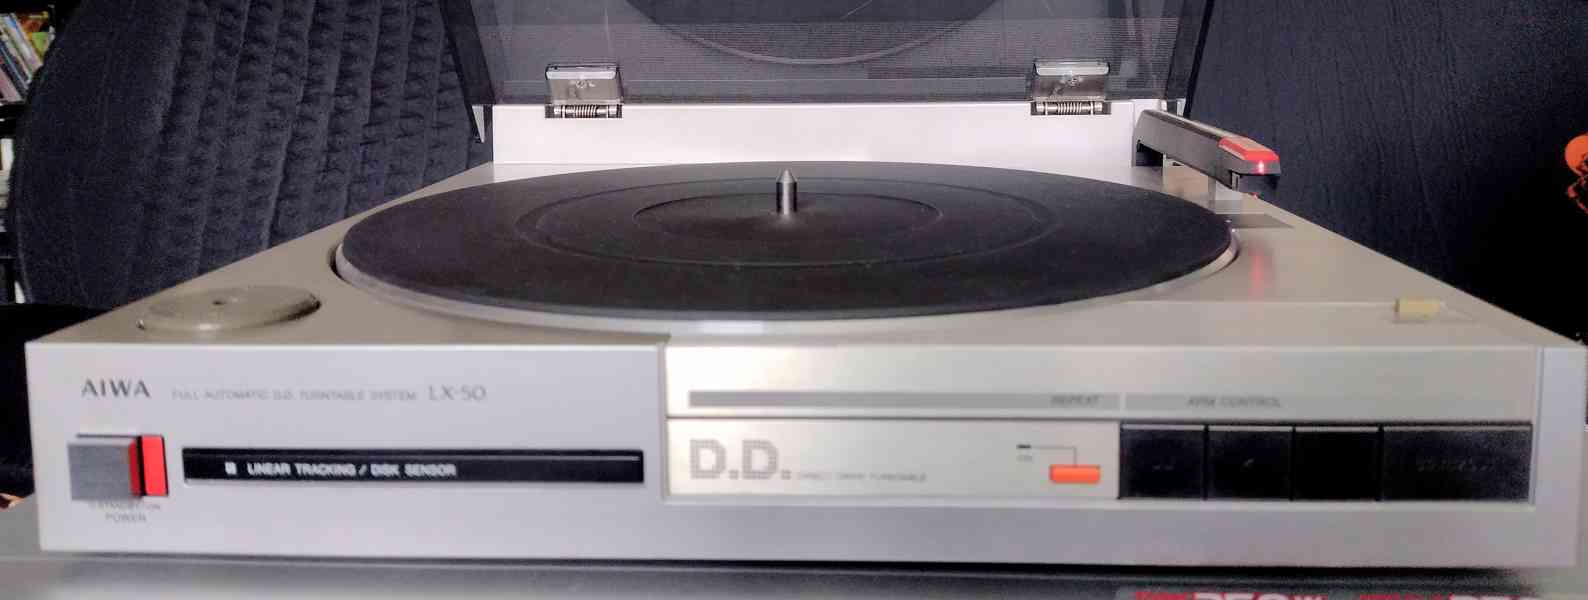 Aiwa LX-50. Direct drive gramofon japonské výroby - foto 4